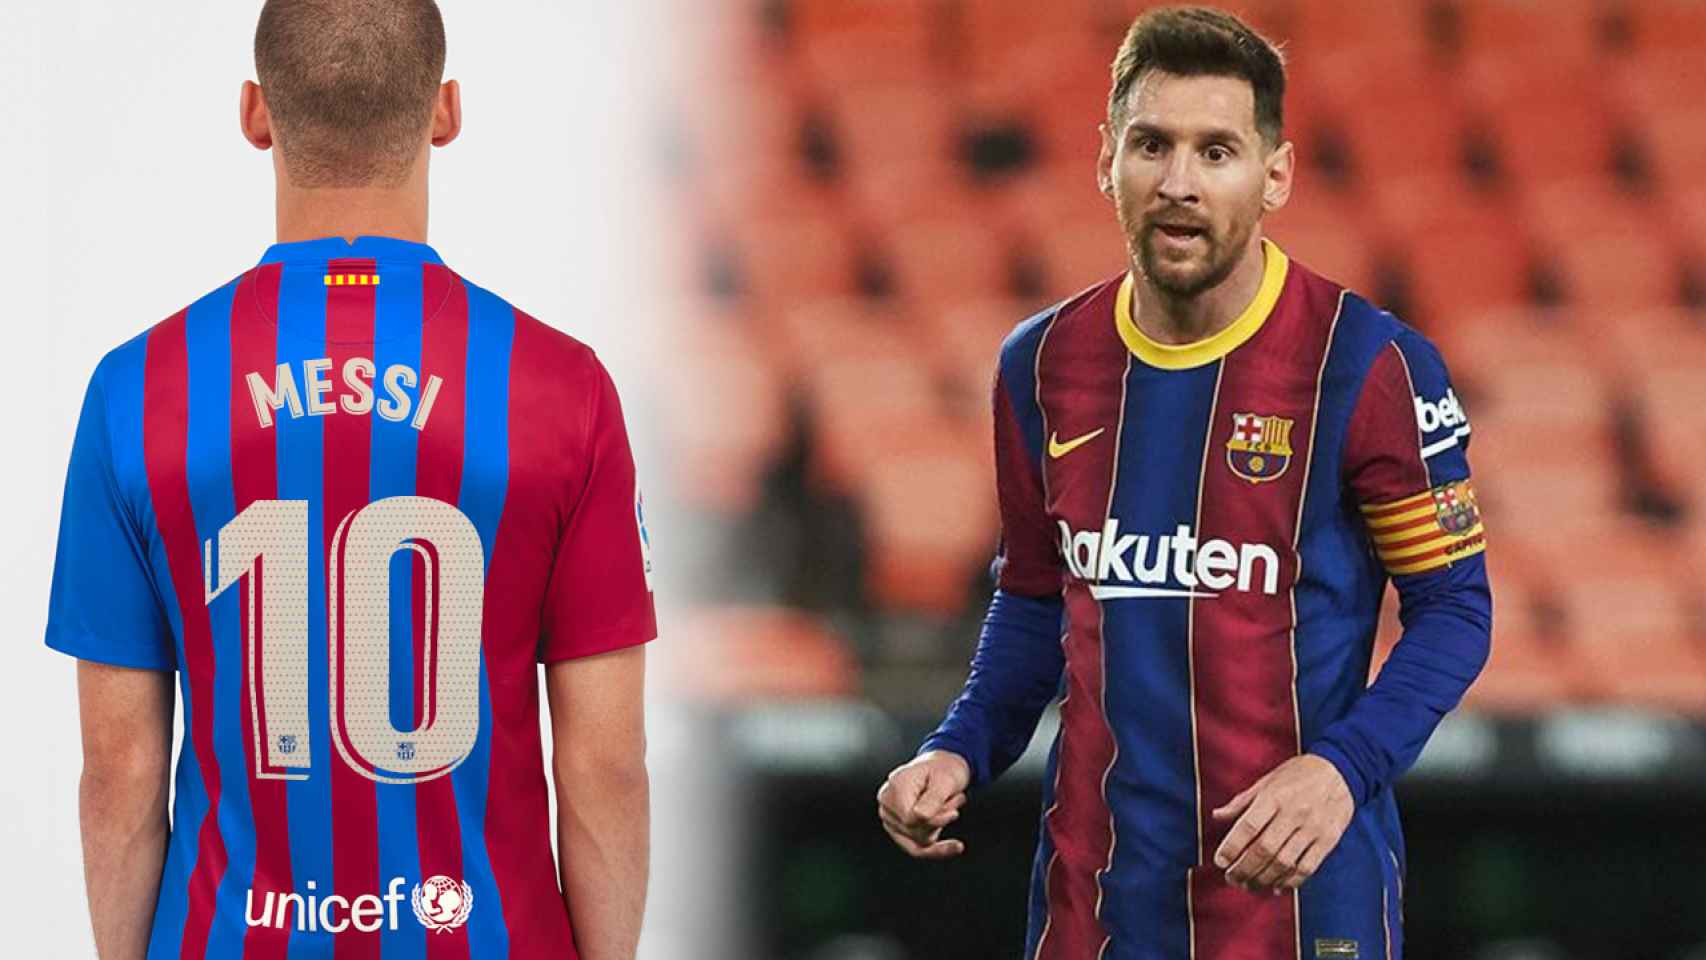 Posicionar Proporcional Casi muerto La negligencia del Barça: siguen vendiendo la camiseta de Messi sin que sea  su jugador